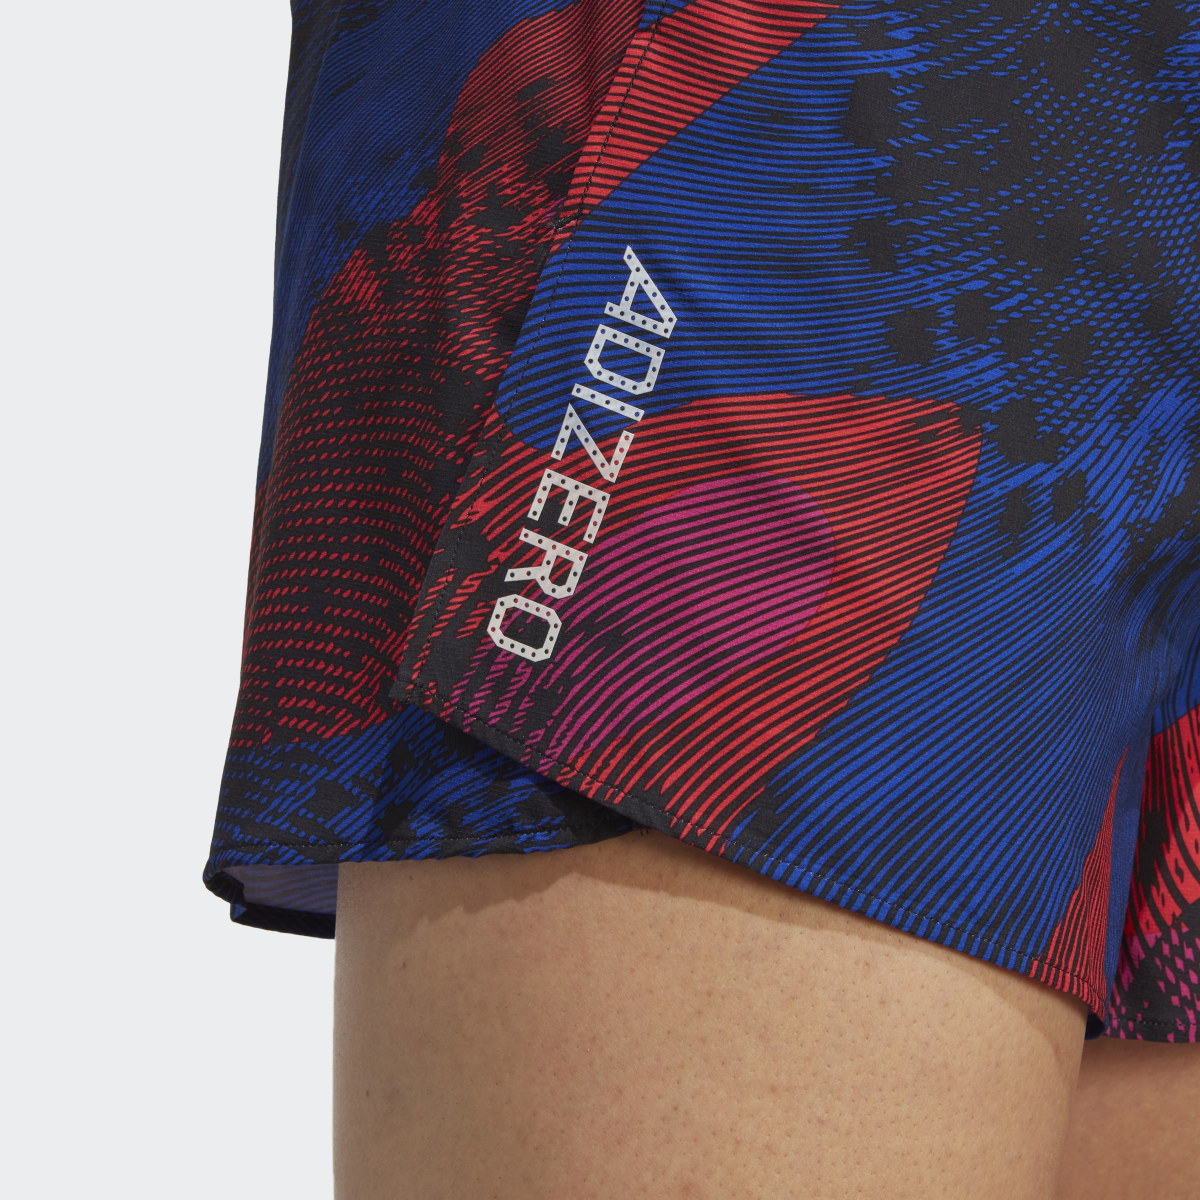 Adidas Adizero Split Shorts. 6